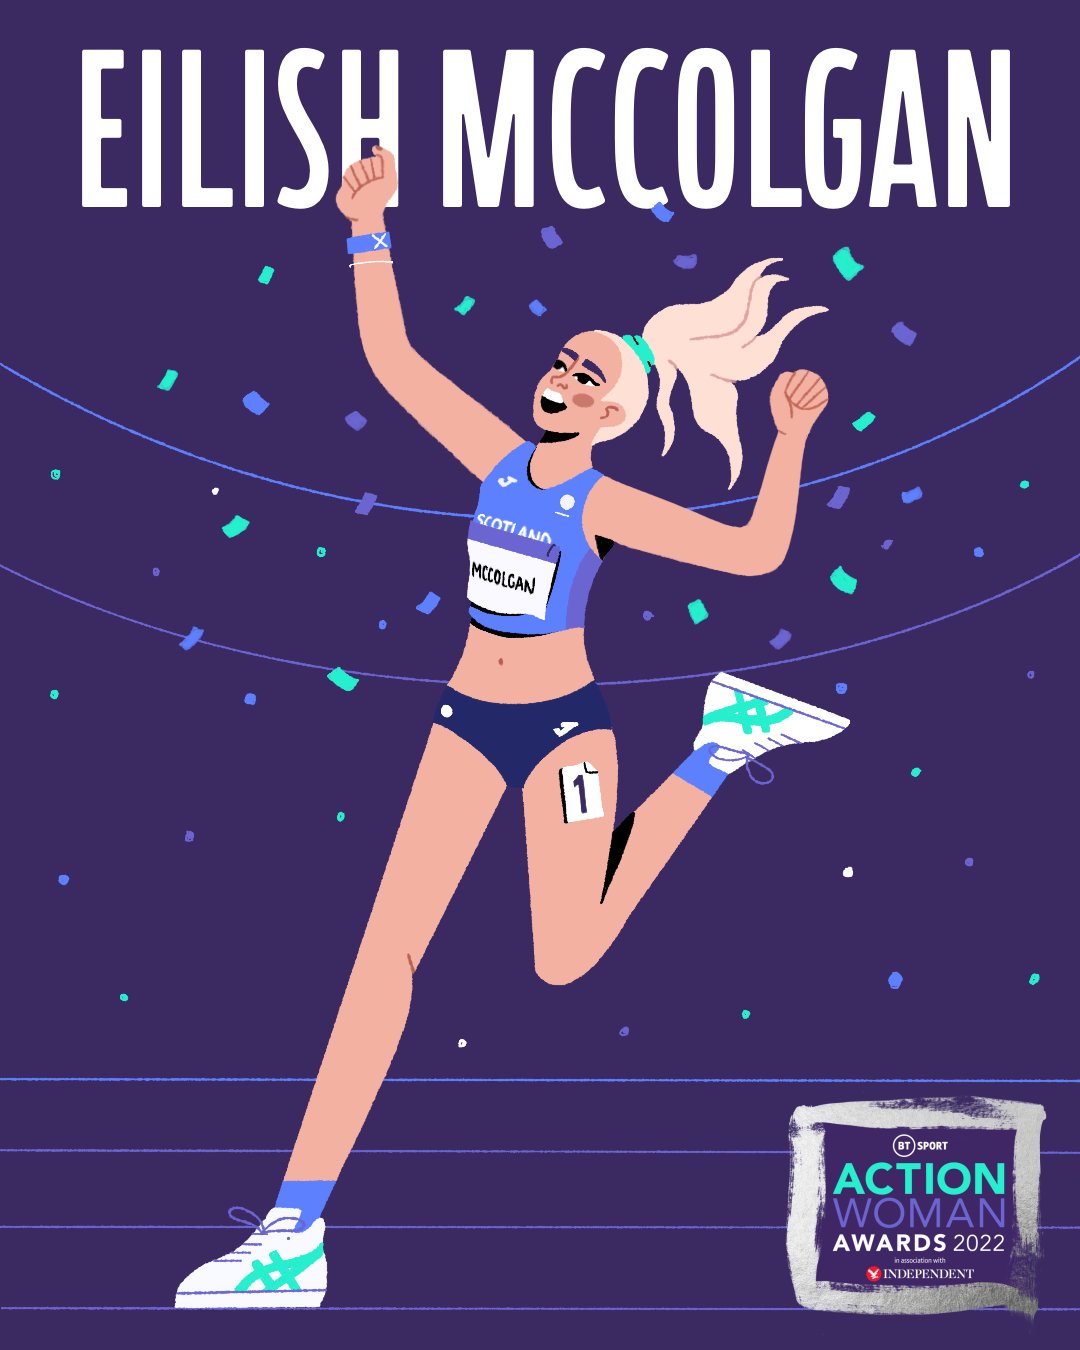 Eilish McColgan running